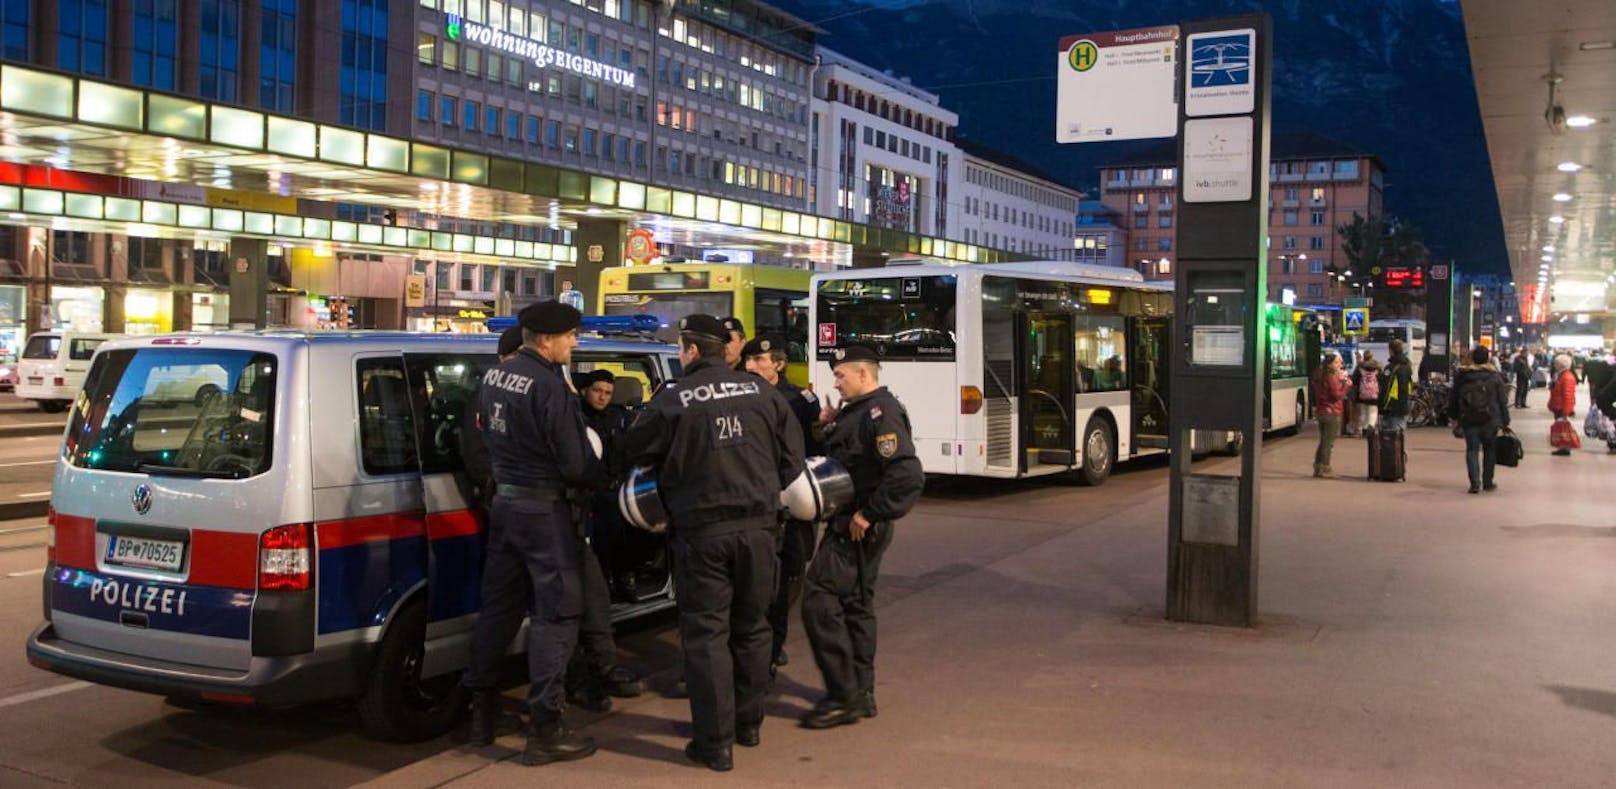 Die Attacke ereignete sich in der Nähe des Innsbrucker Hauptbahnhofs. Archivbild